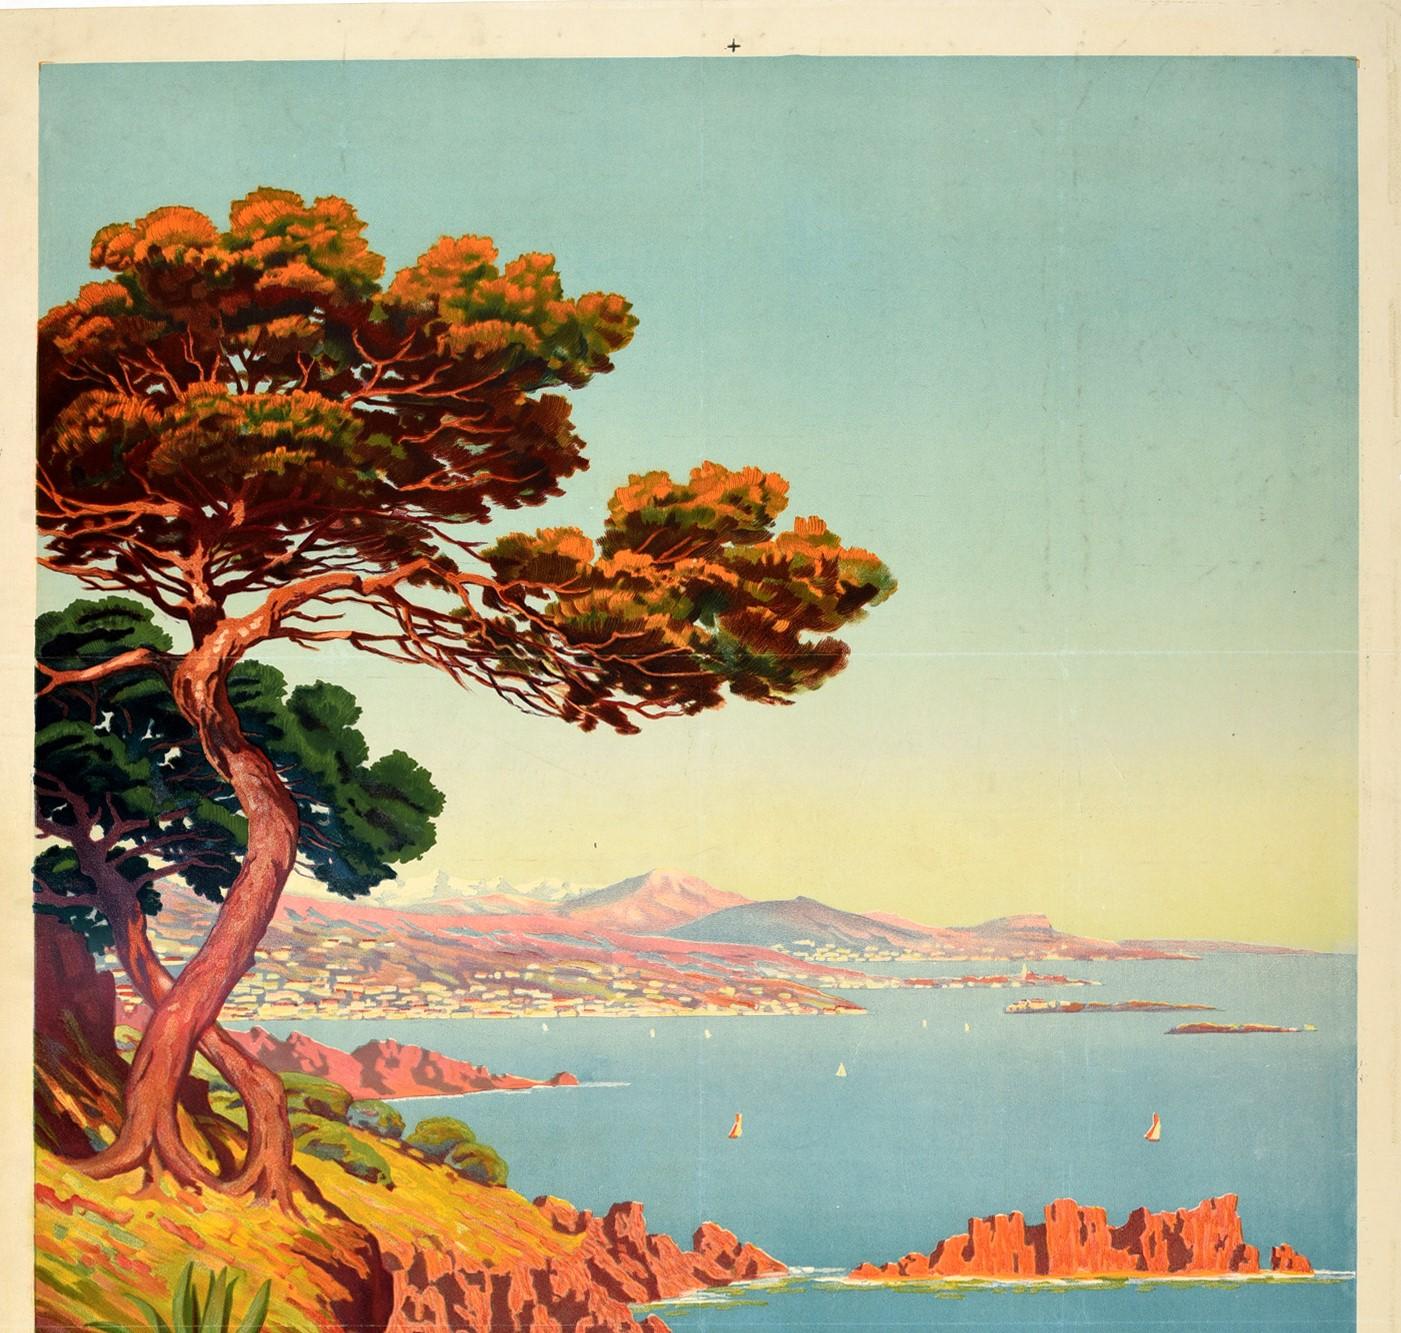 Affiche publicitaire d'époque pour La Côte d'Azur / The French Riviera présentant une vue panoramique de la côte par le peintre Charles Adelin Morel de Tanguy (1857-1930):: avec des fleurs et des arbres le long d'un sentier de colline rocheux au